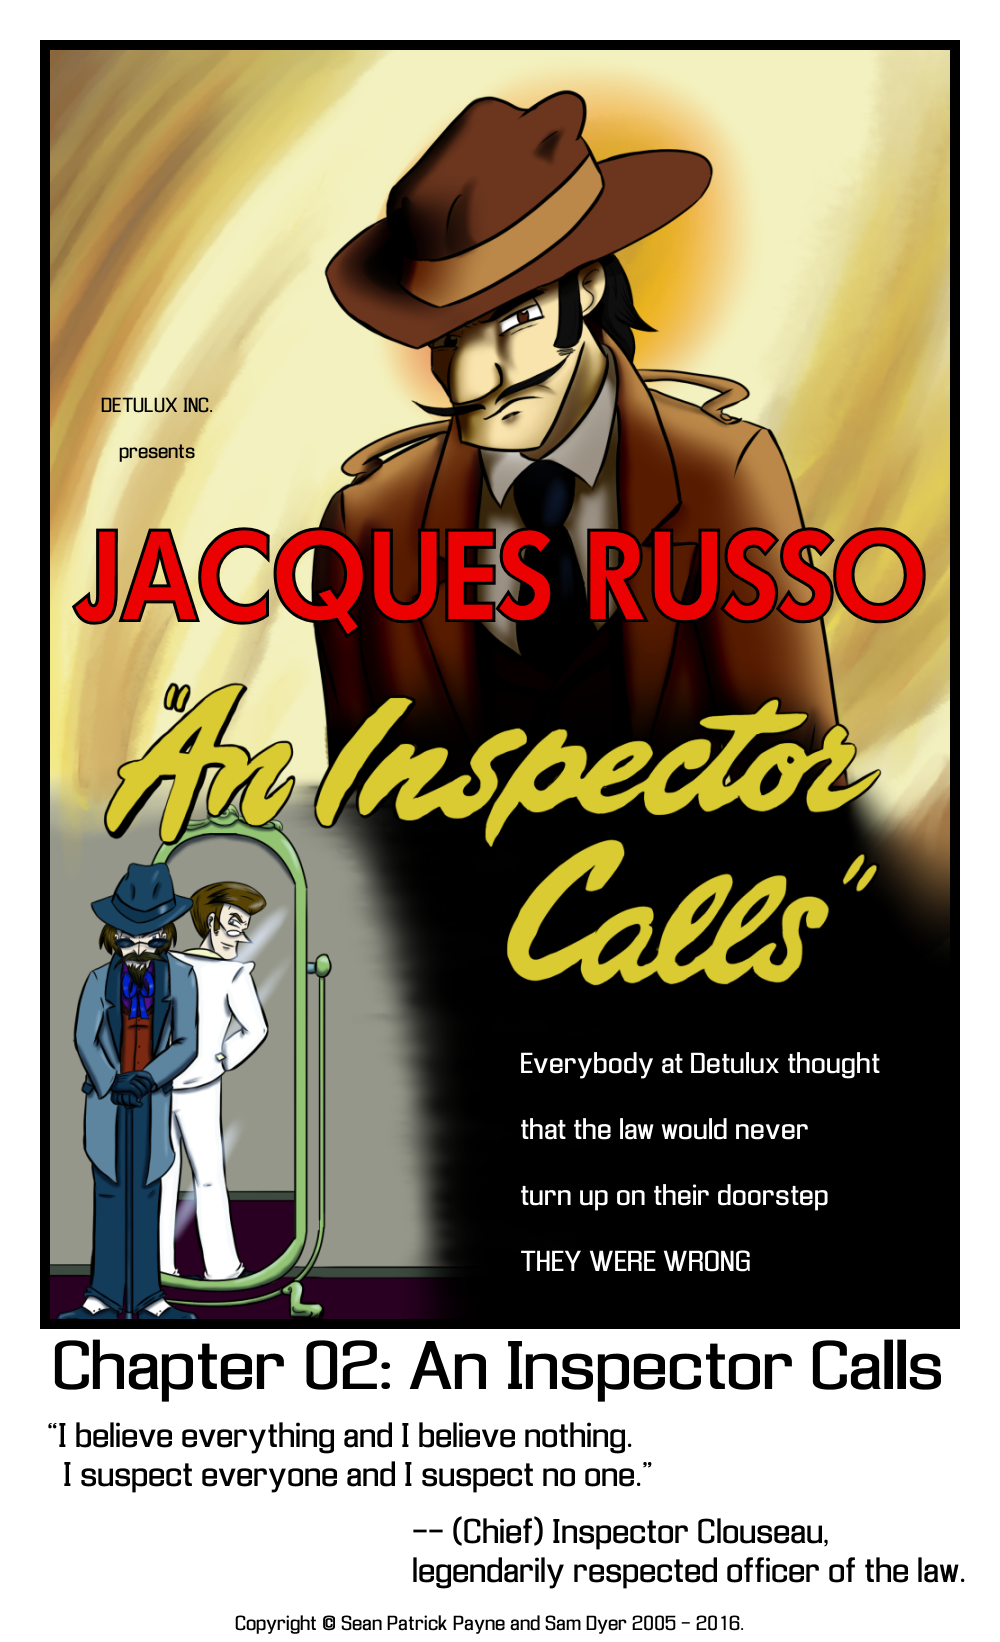 Chapter 2: An Inspector Calls